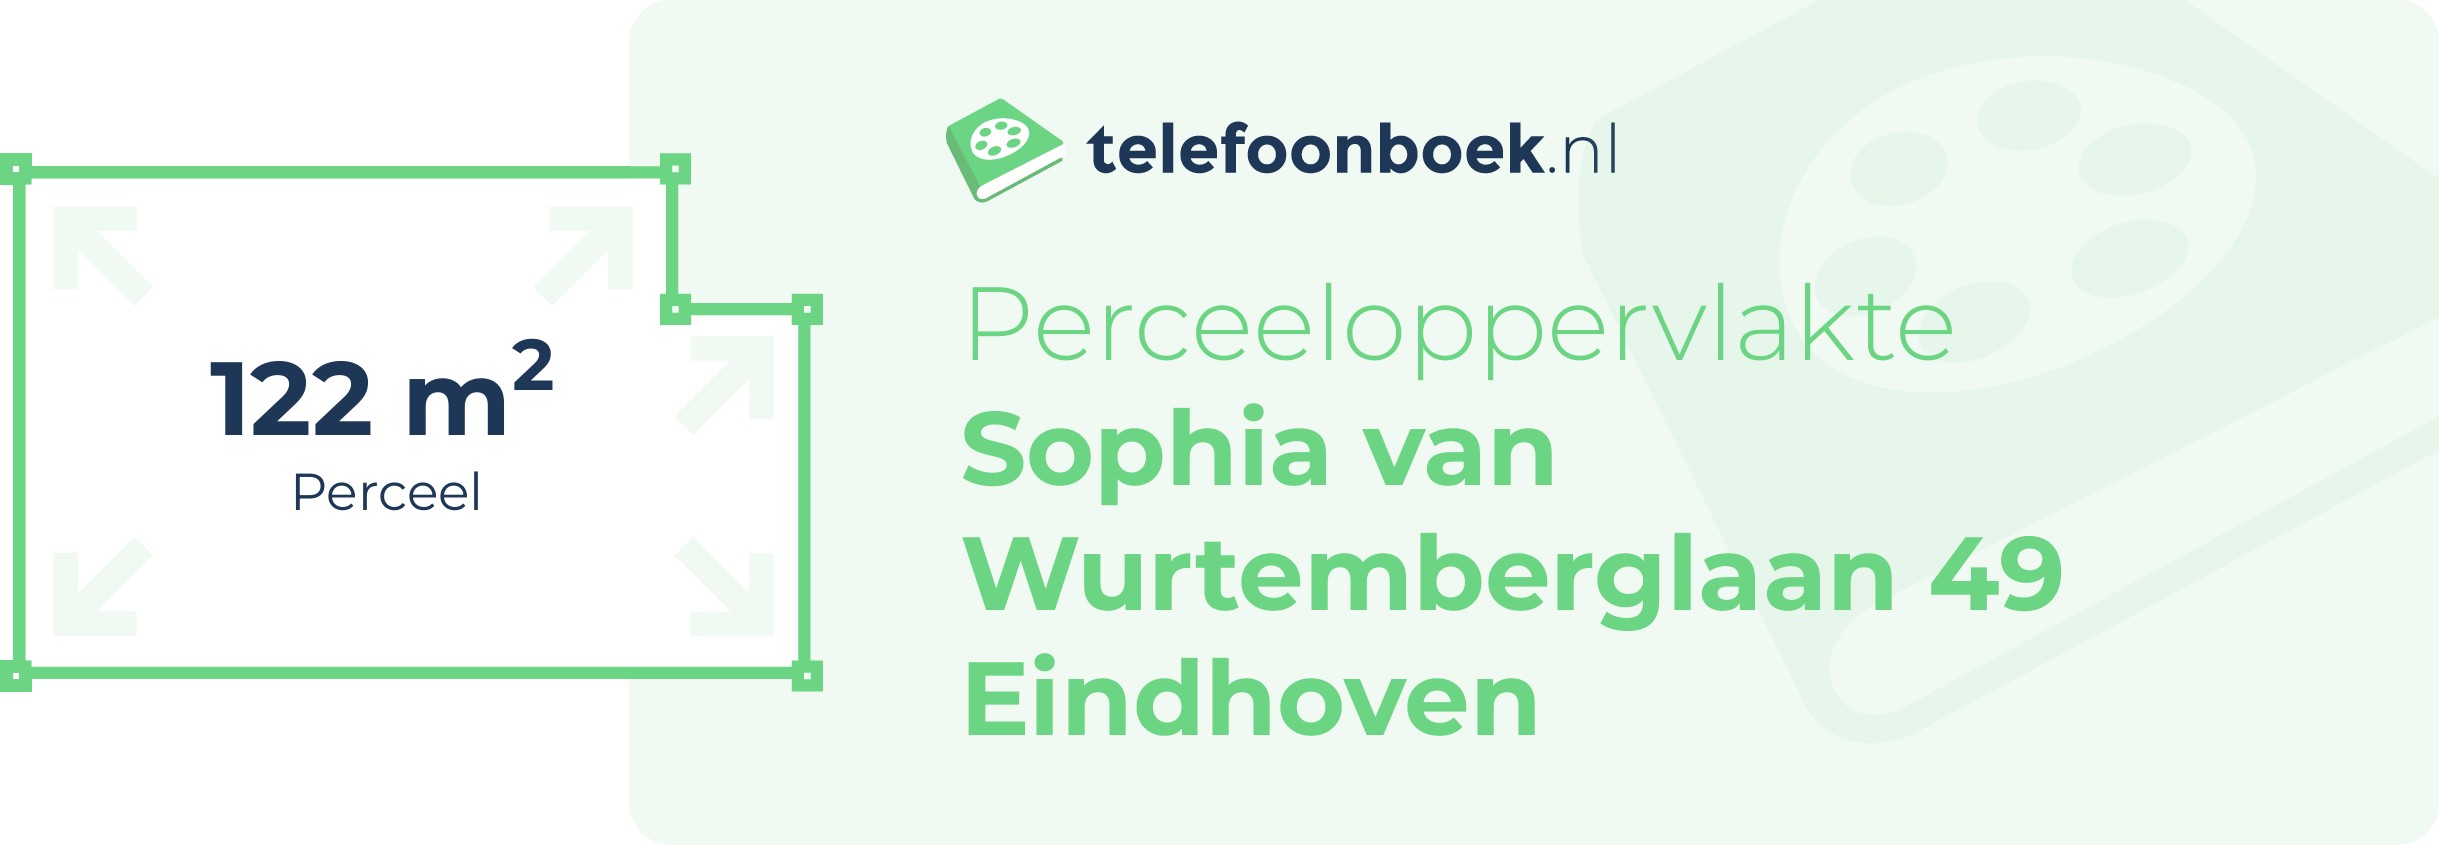 Perceeloppervlakte Sophia Van Wurtemberglaan 49 Eindhoven